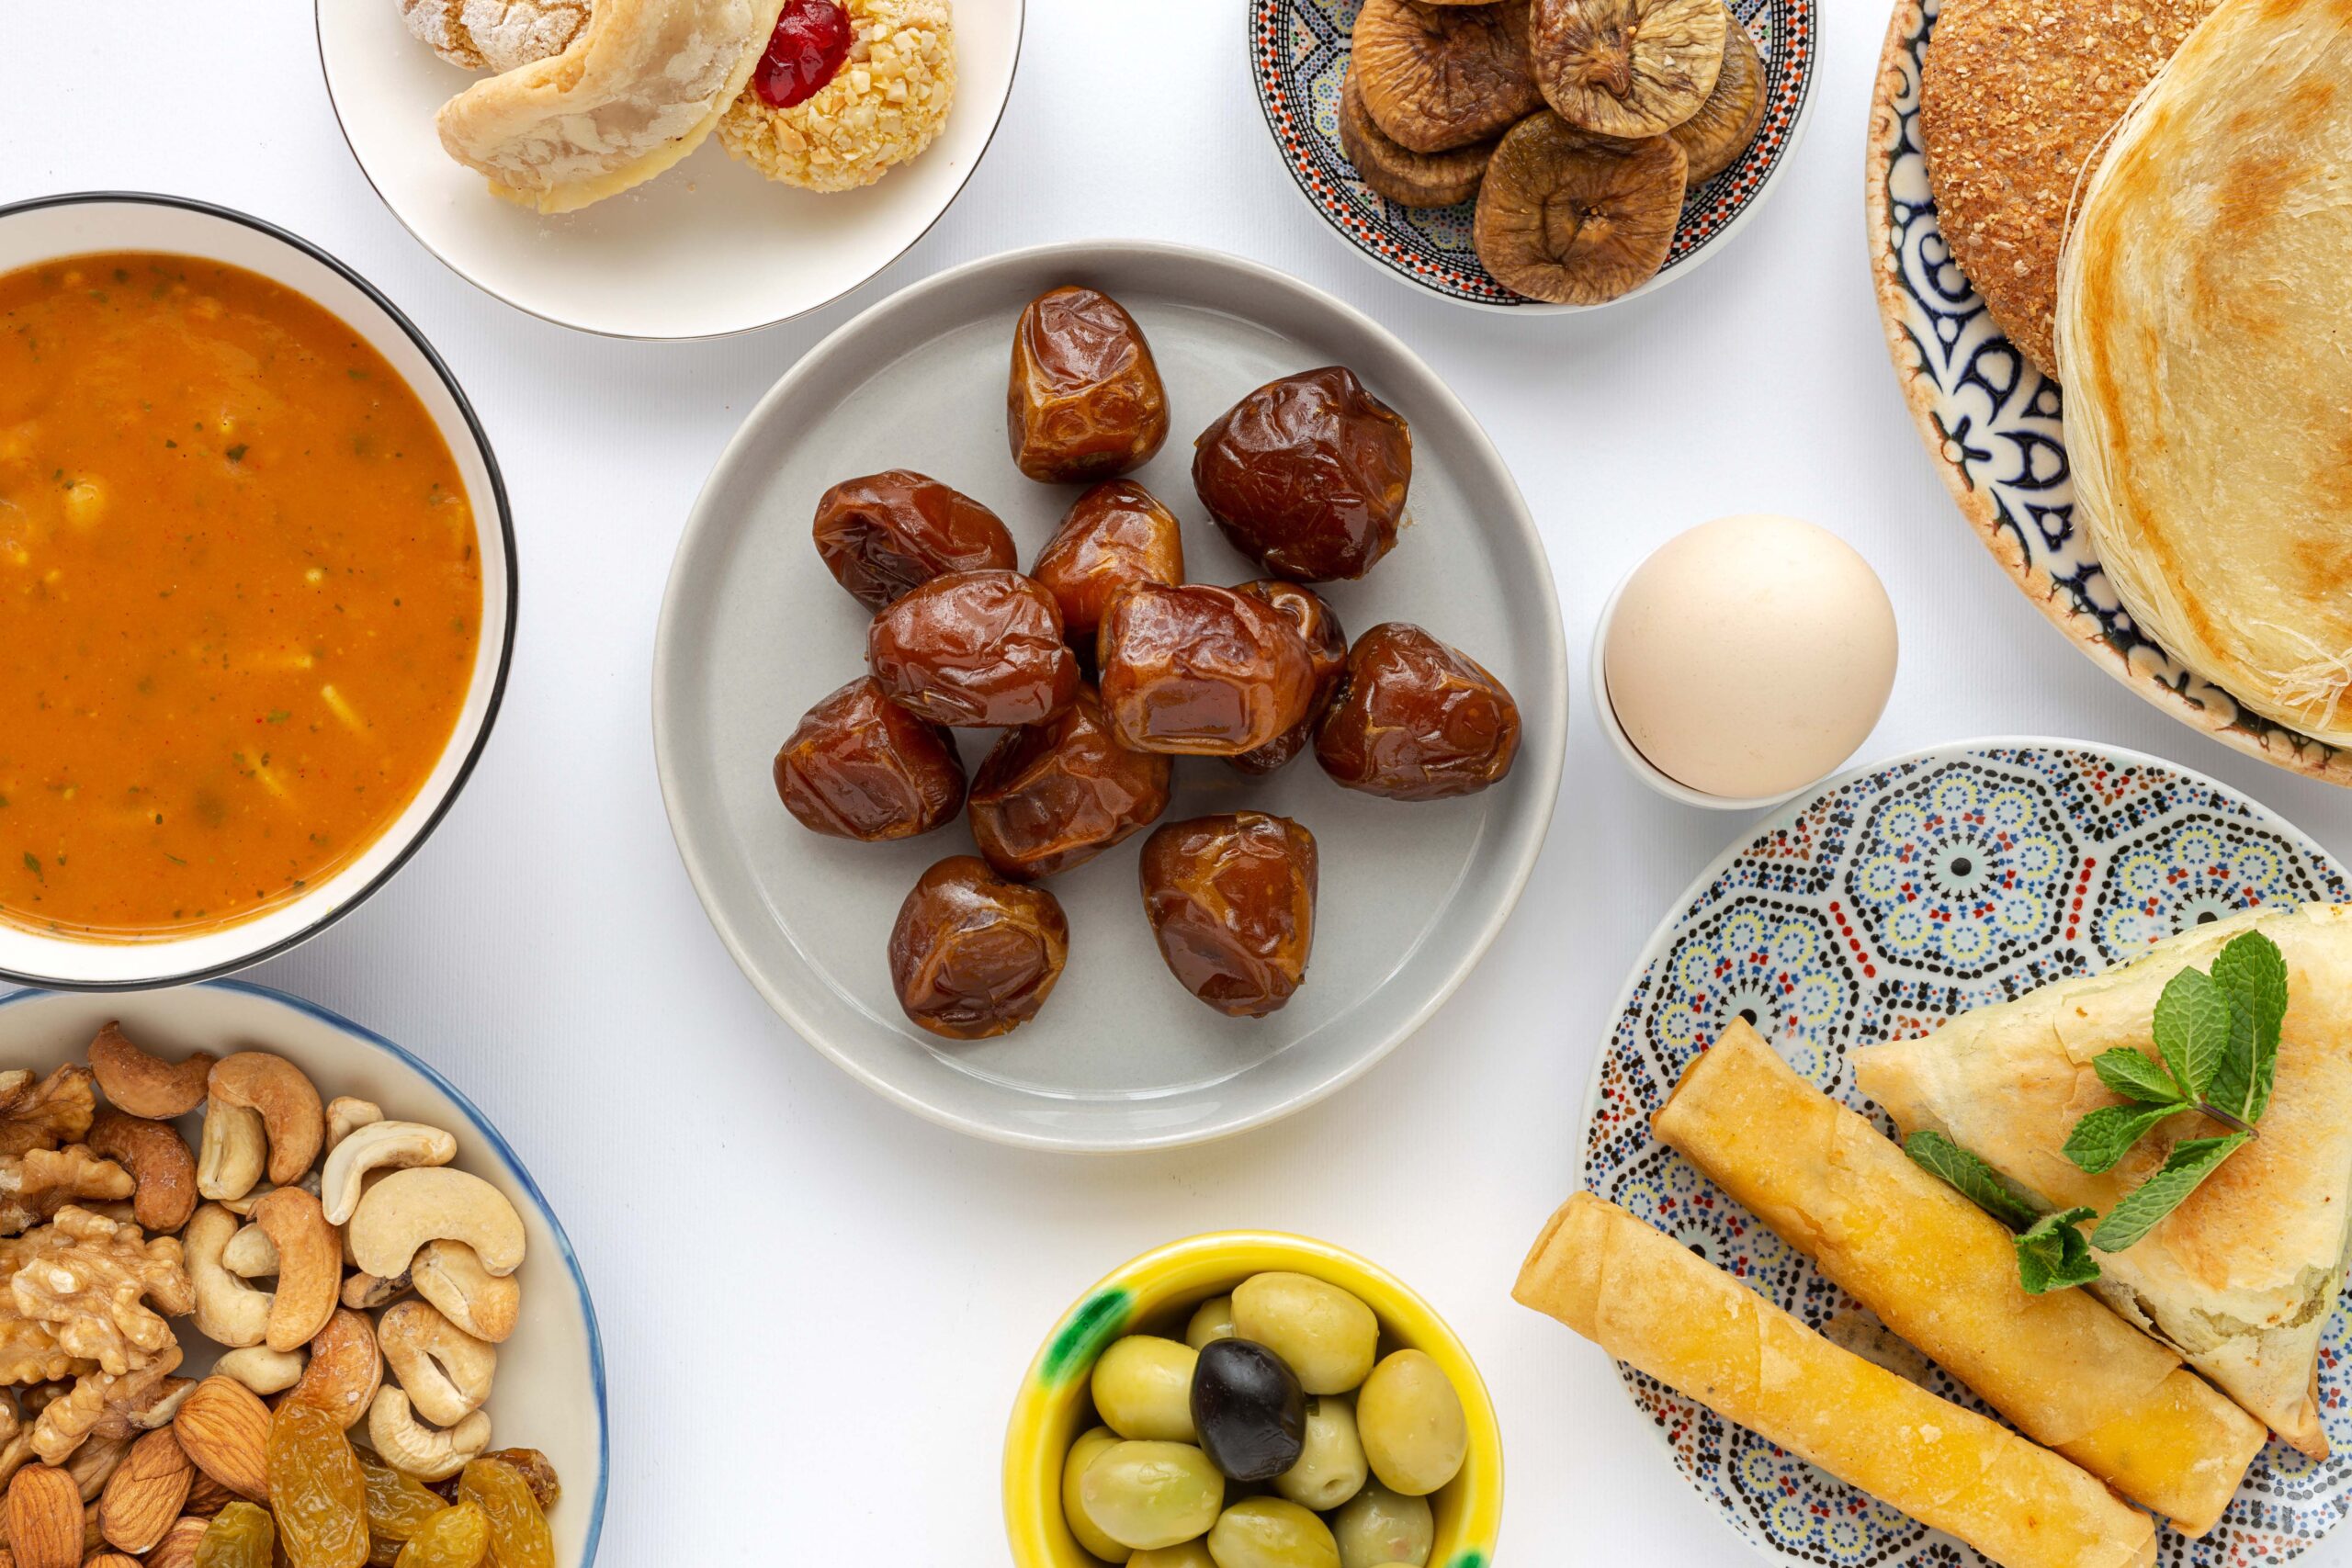 Tafel gevuld met verschillende kleine ramadan gerechten zoals dadels, harira, olijven en noten.